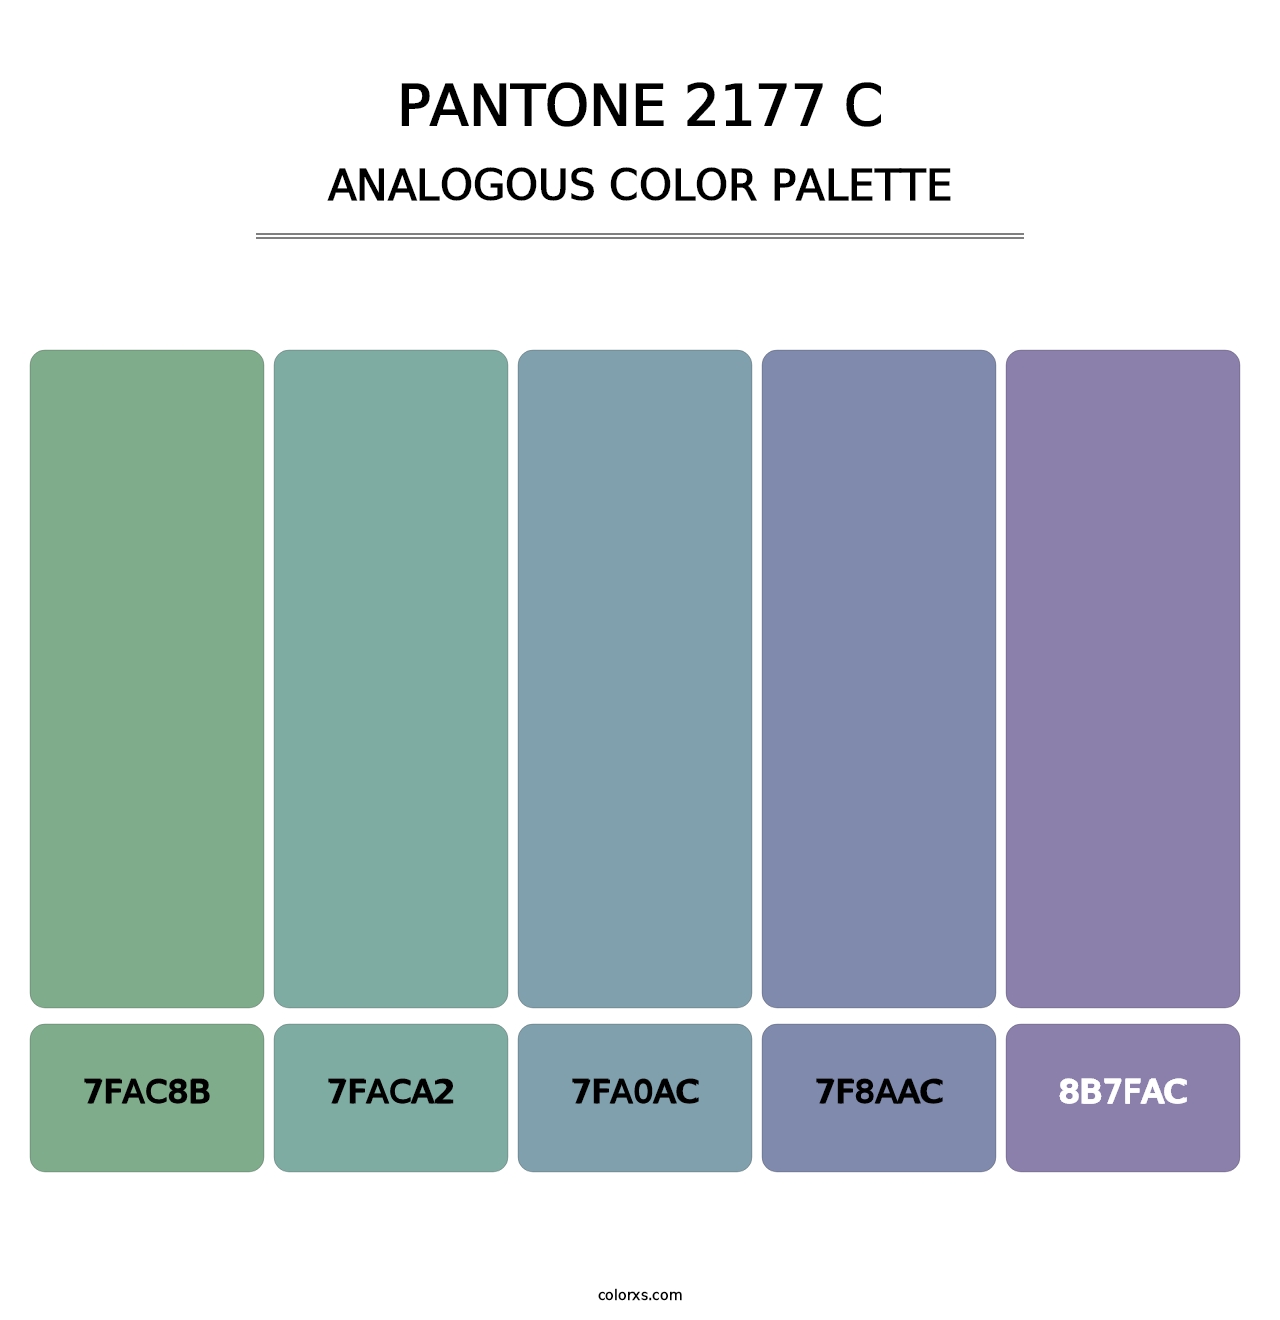 PANTONE 2177 C - Analogous Color Palette